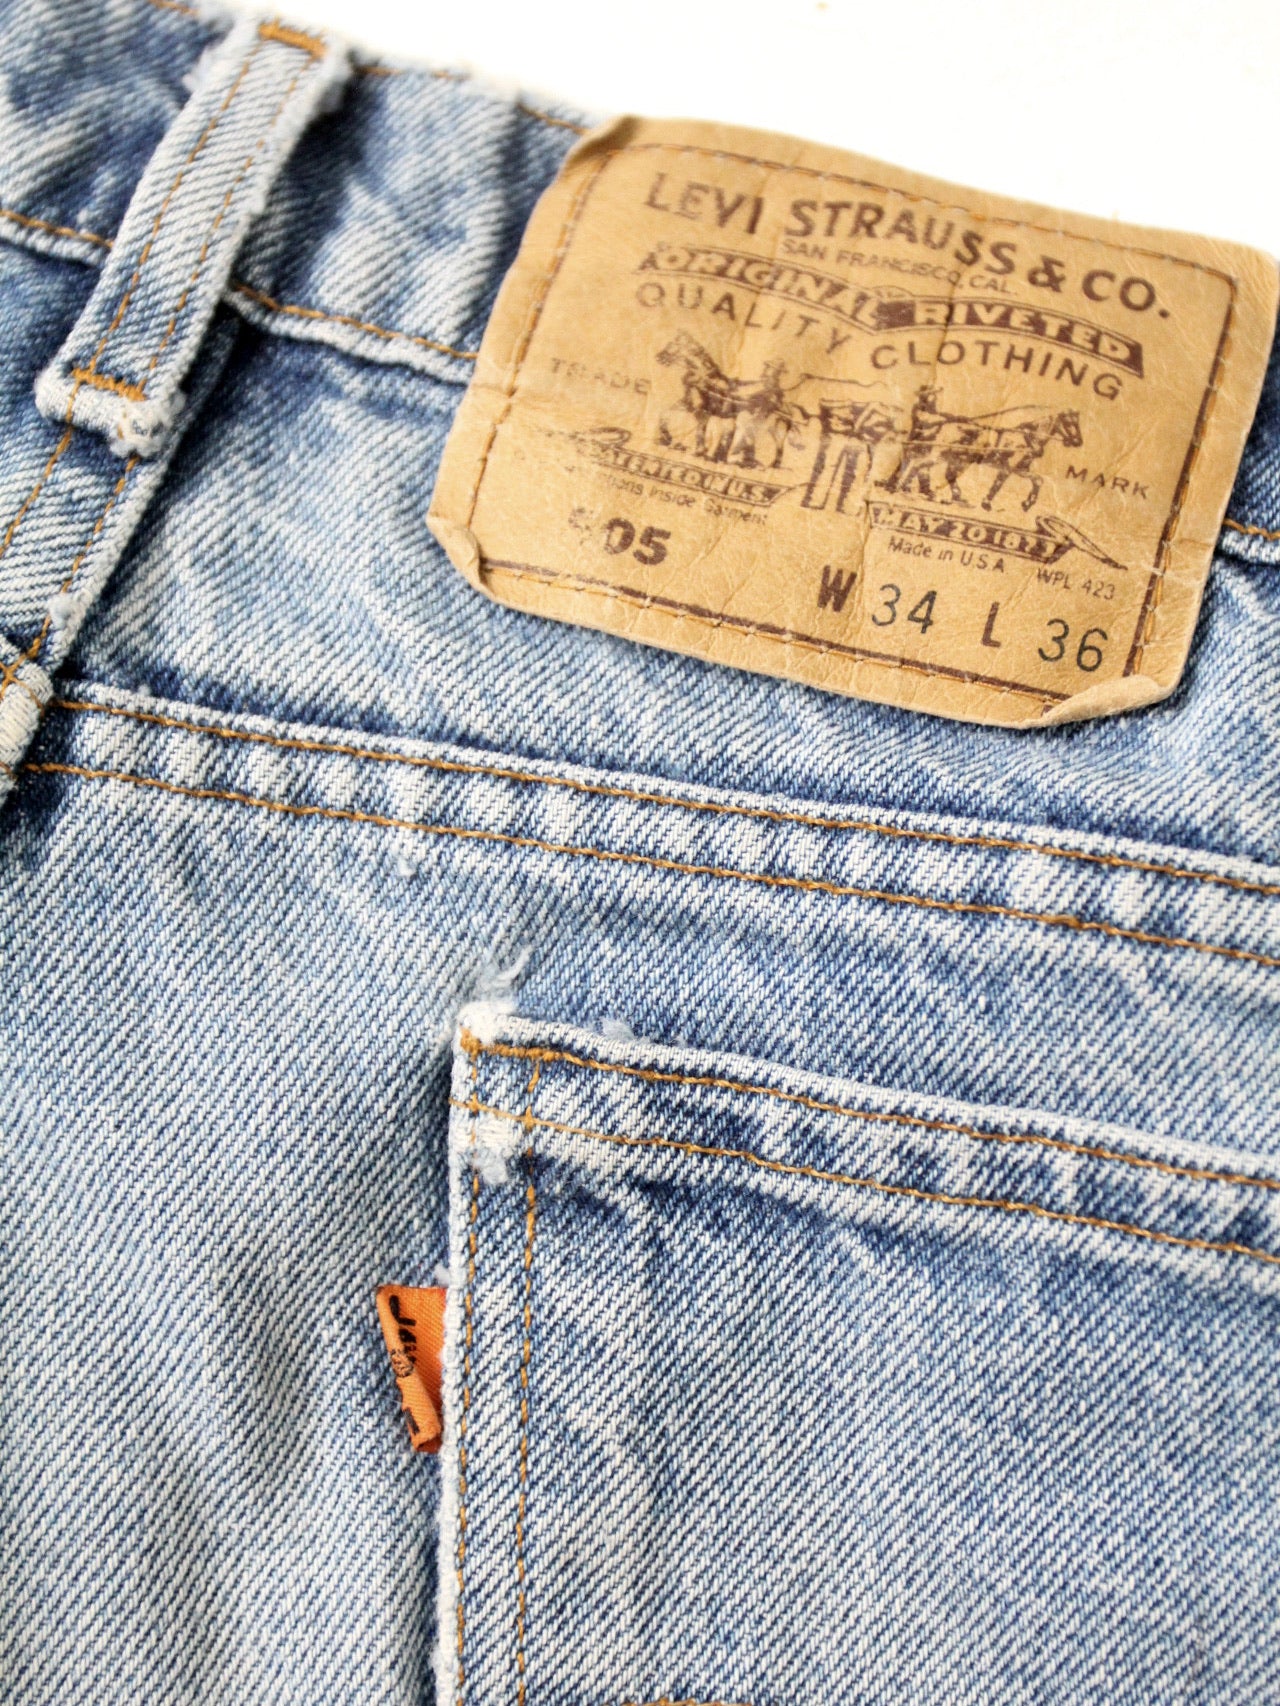 vintage 70s Levis 505 denim jeans  ⎟ 33 x 31